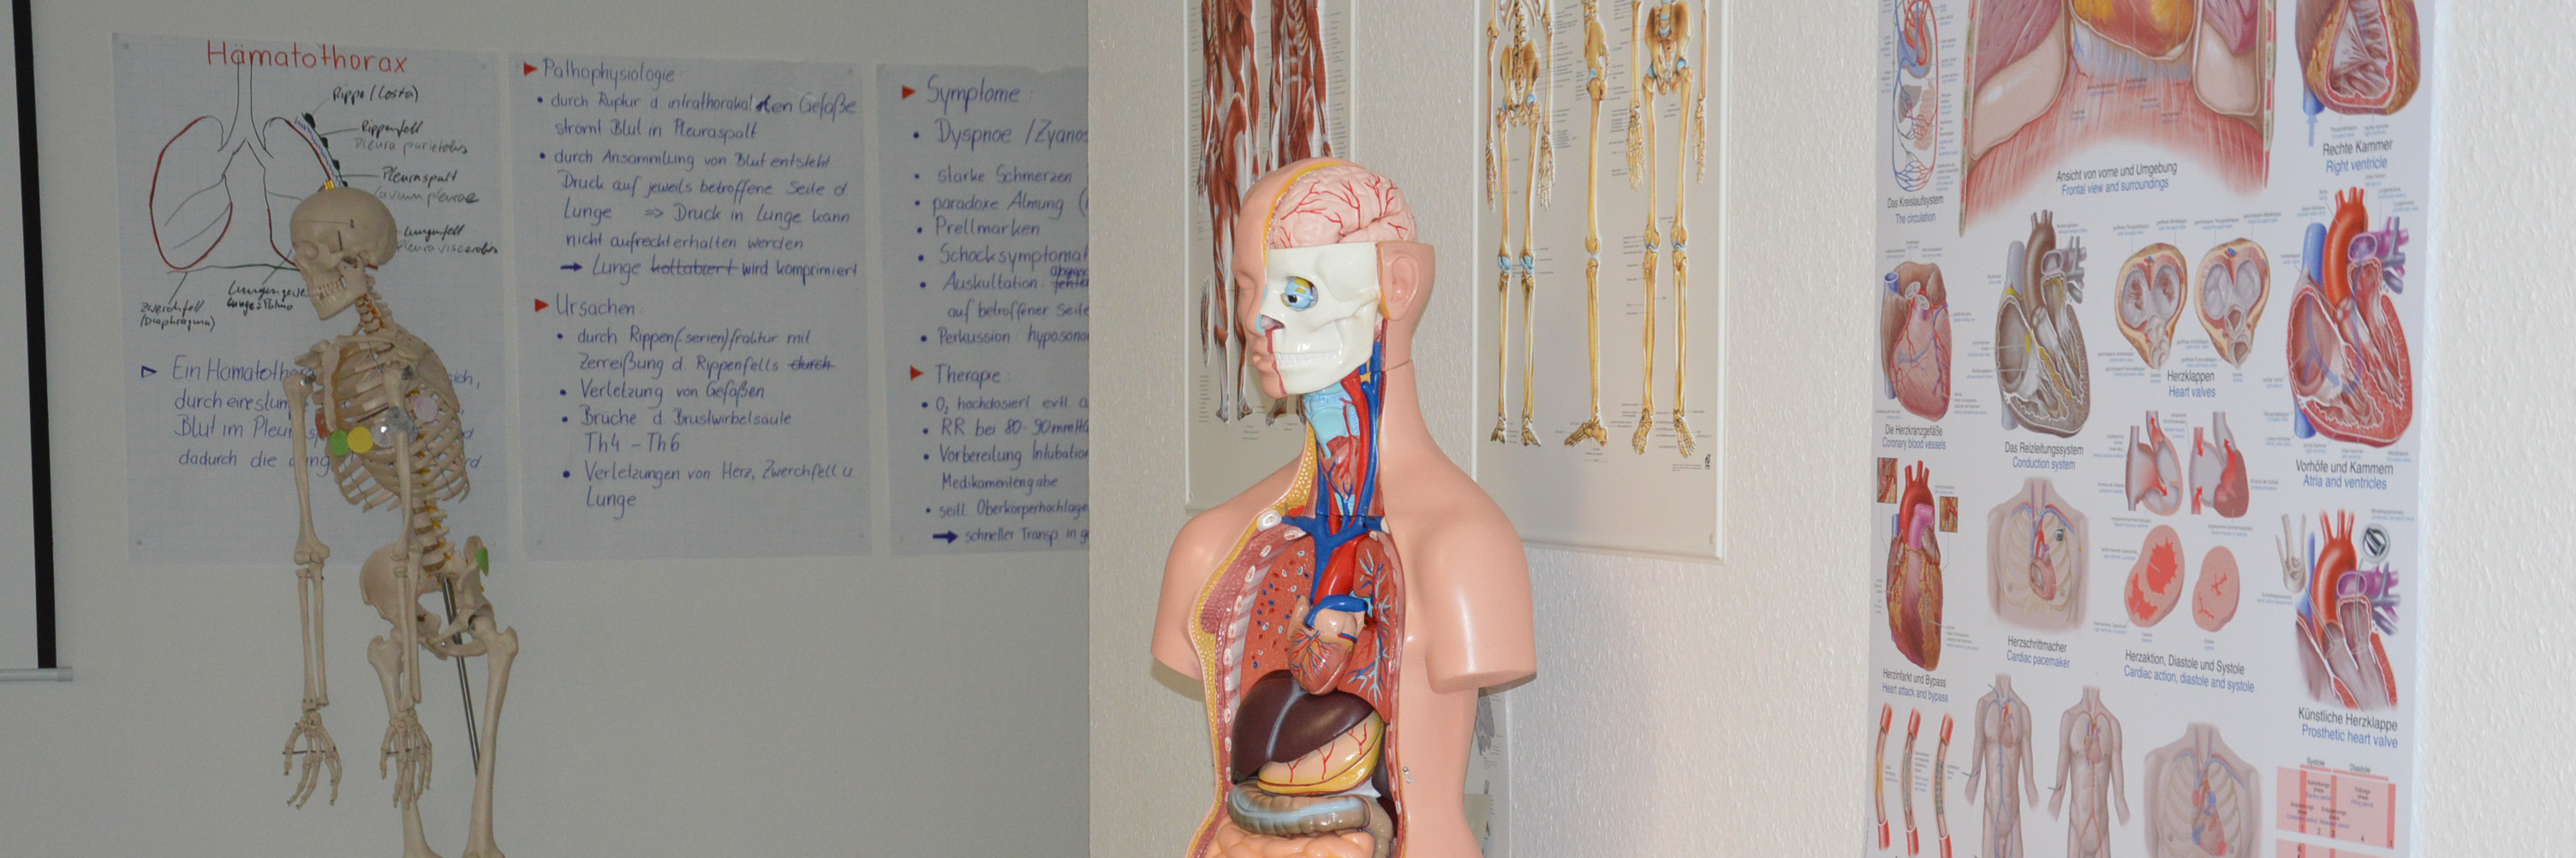 Anatomisches Modell eines Menschen für Lernzwecke